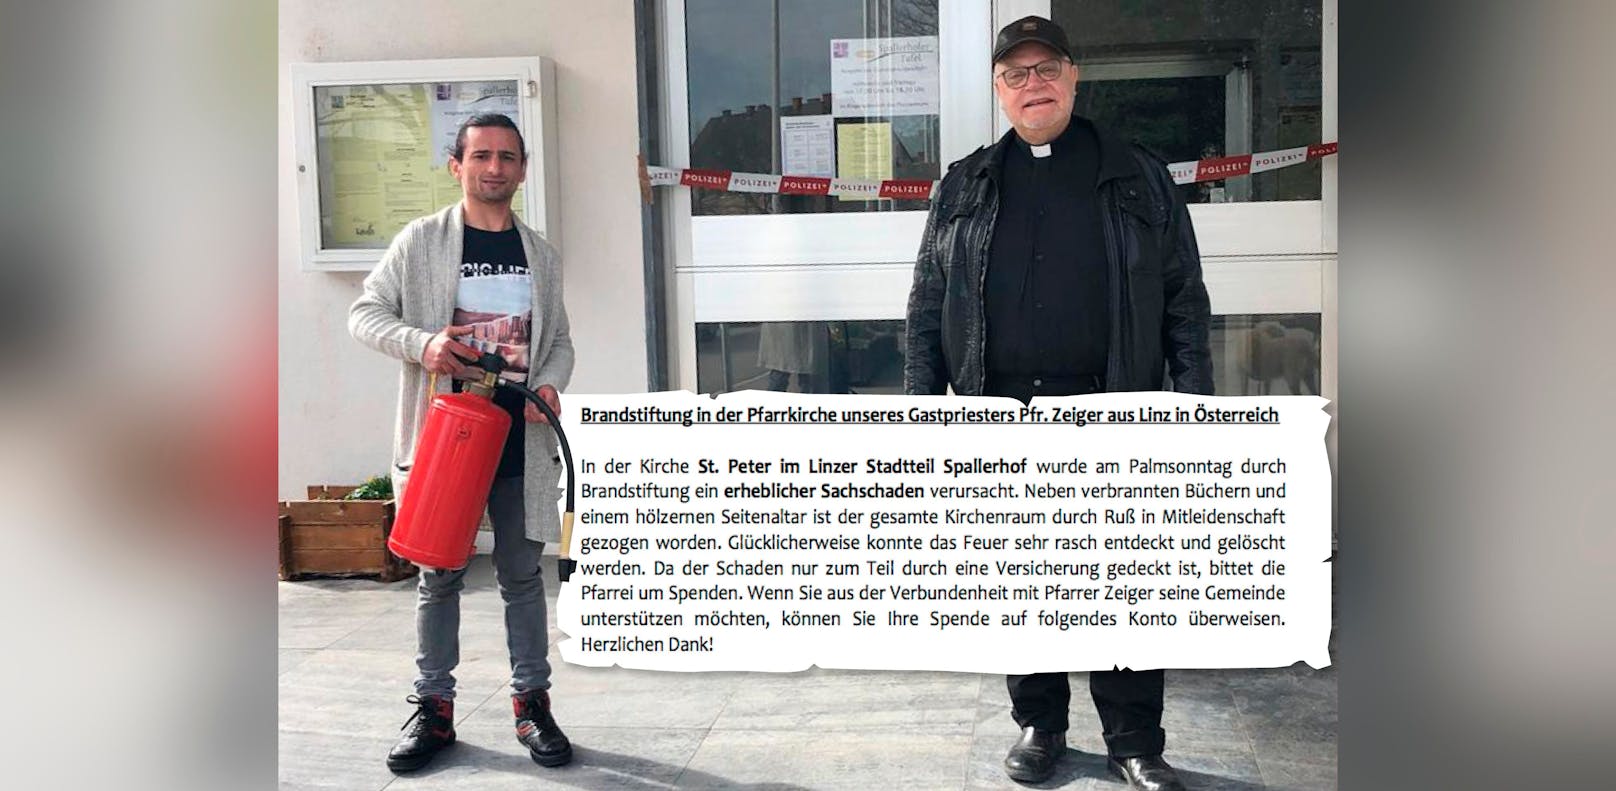 Pfarrer Franz Zeiger (re.) und Moutasem Khadra, der mit einem Feuerlöscher Schlimmeres verhinderte, vor der Kirche. Sogar in Deutschland werden Spenden gesammelt.